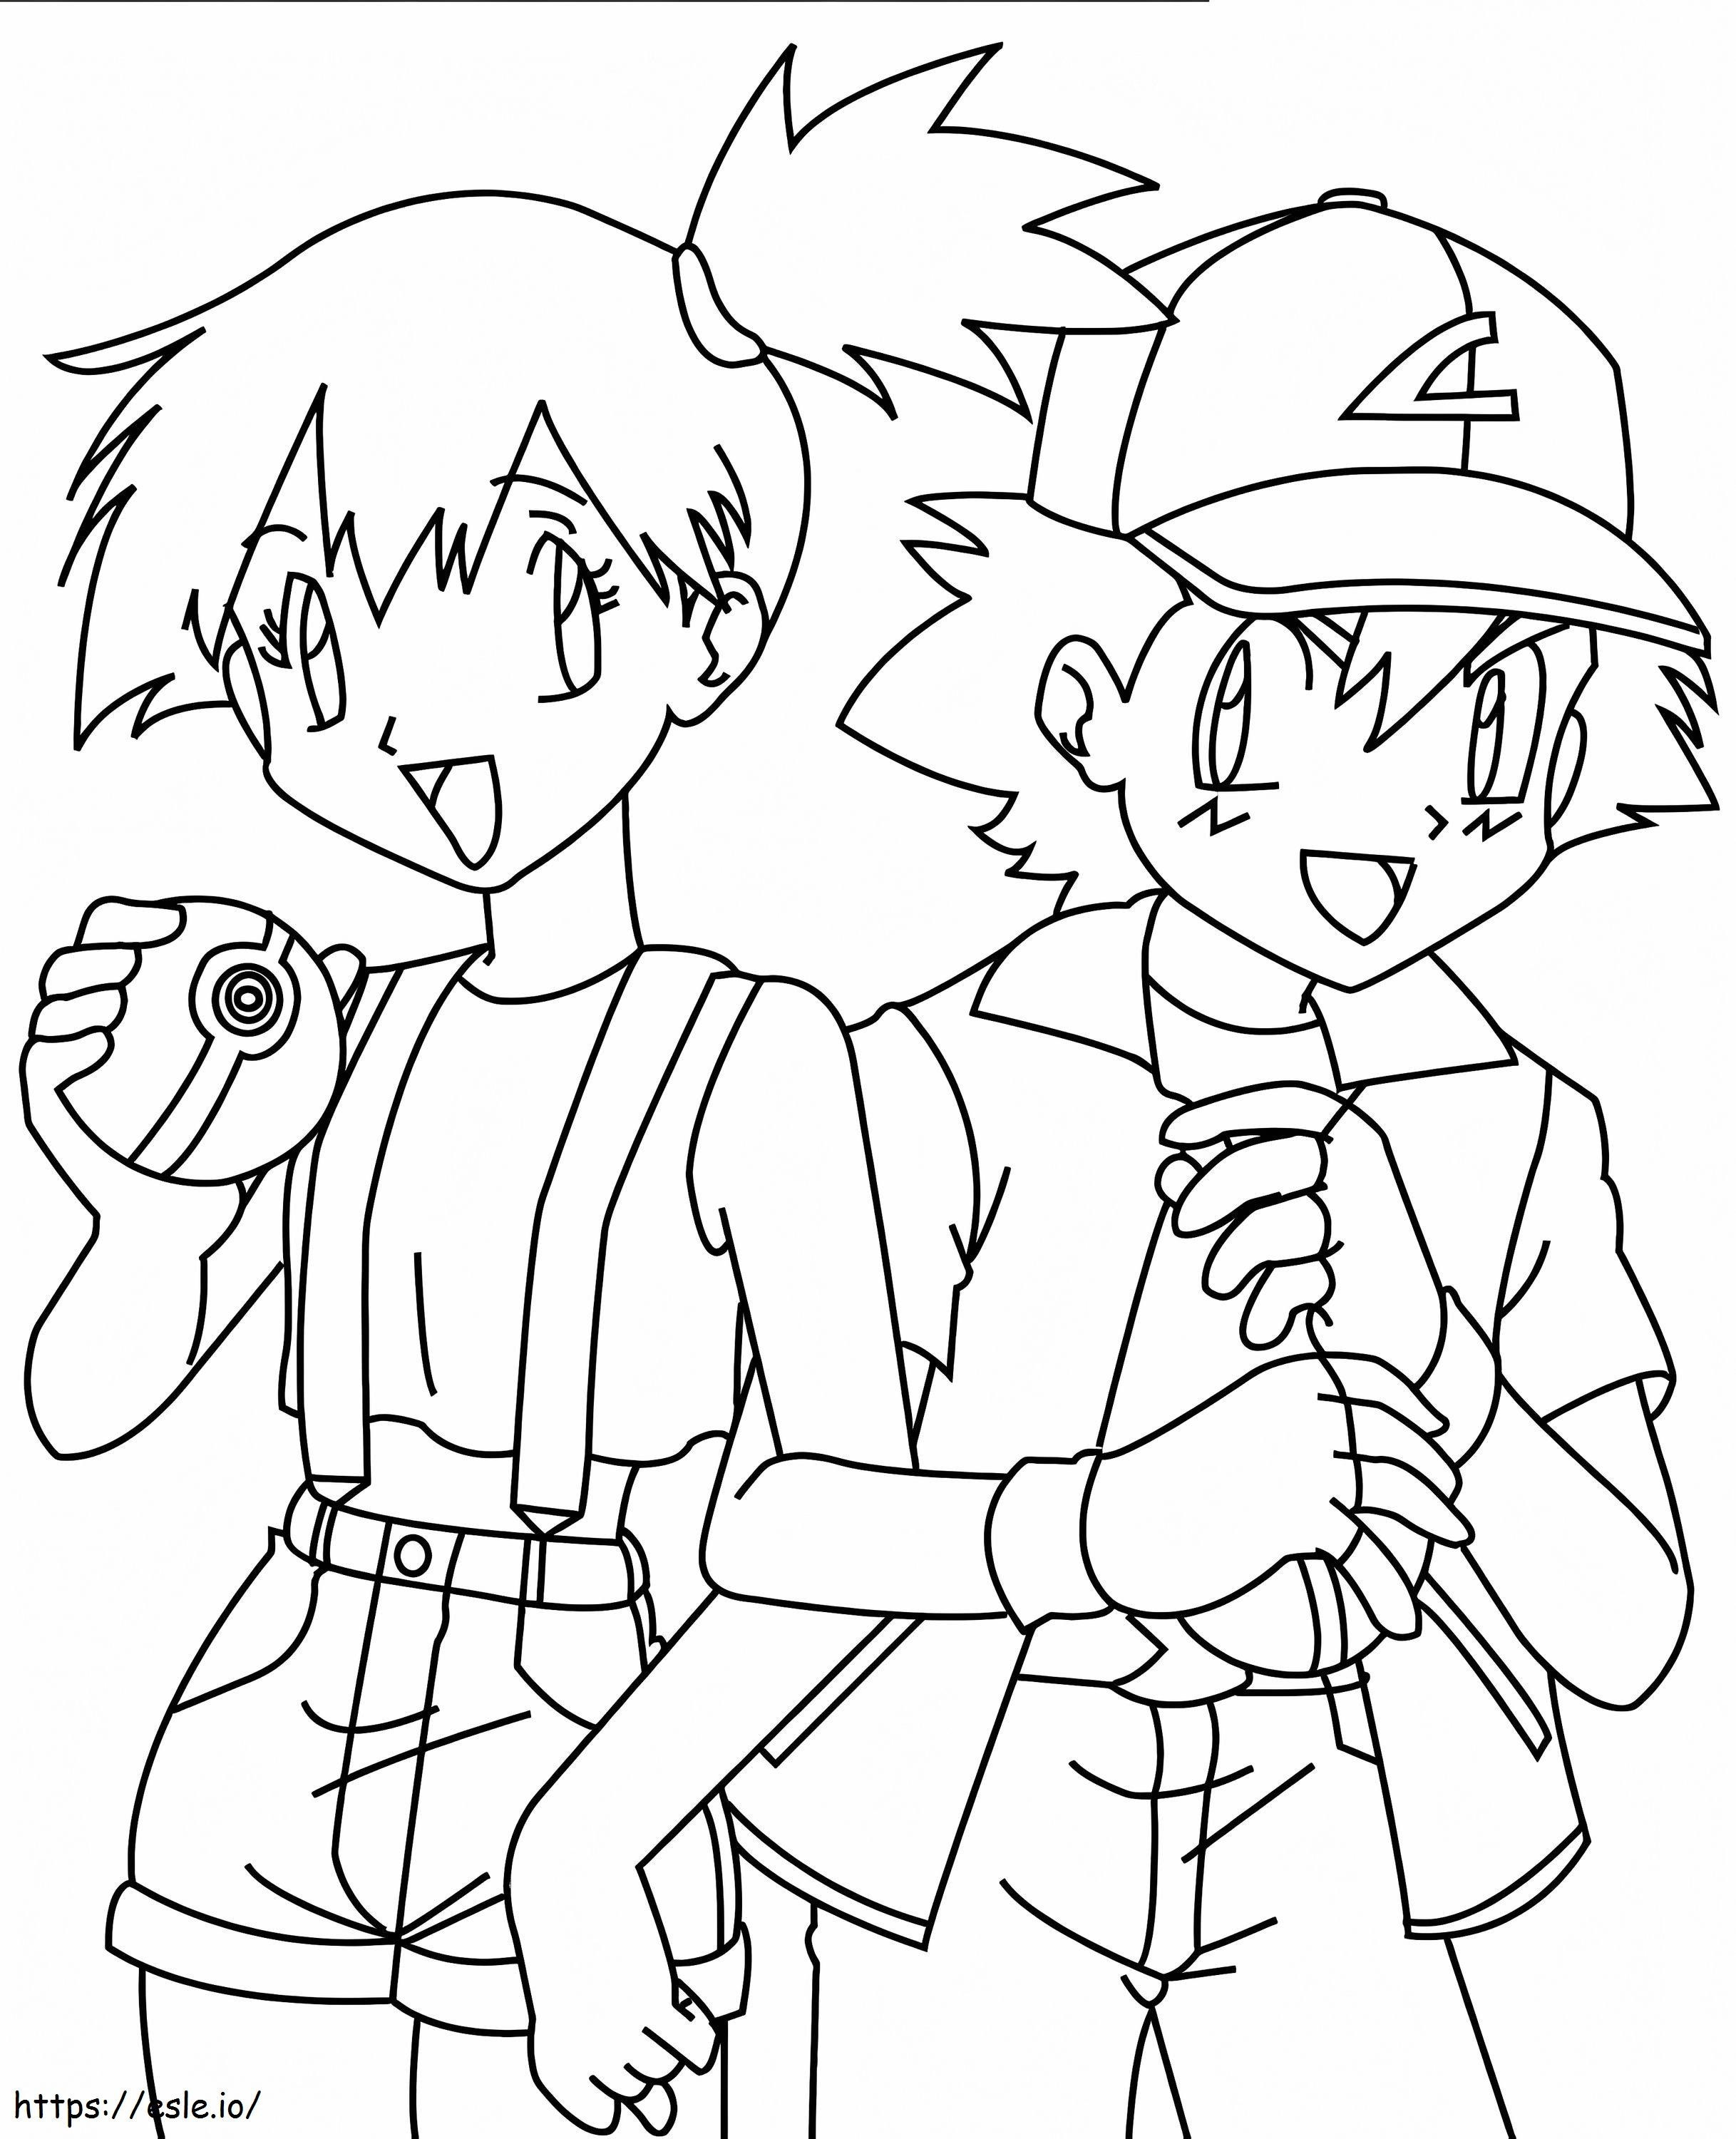 Misty și Ash de colorat